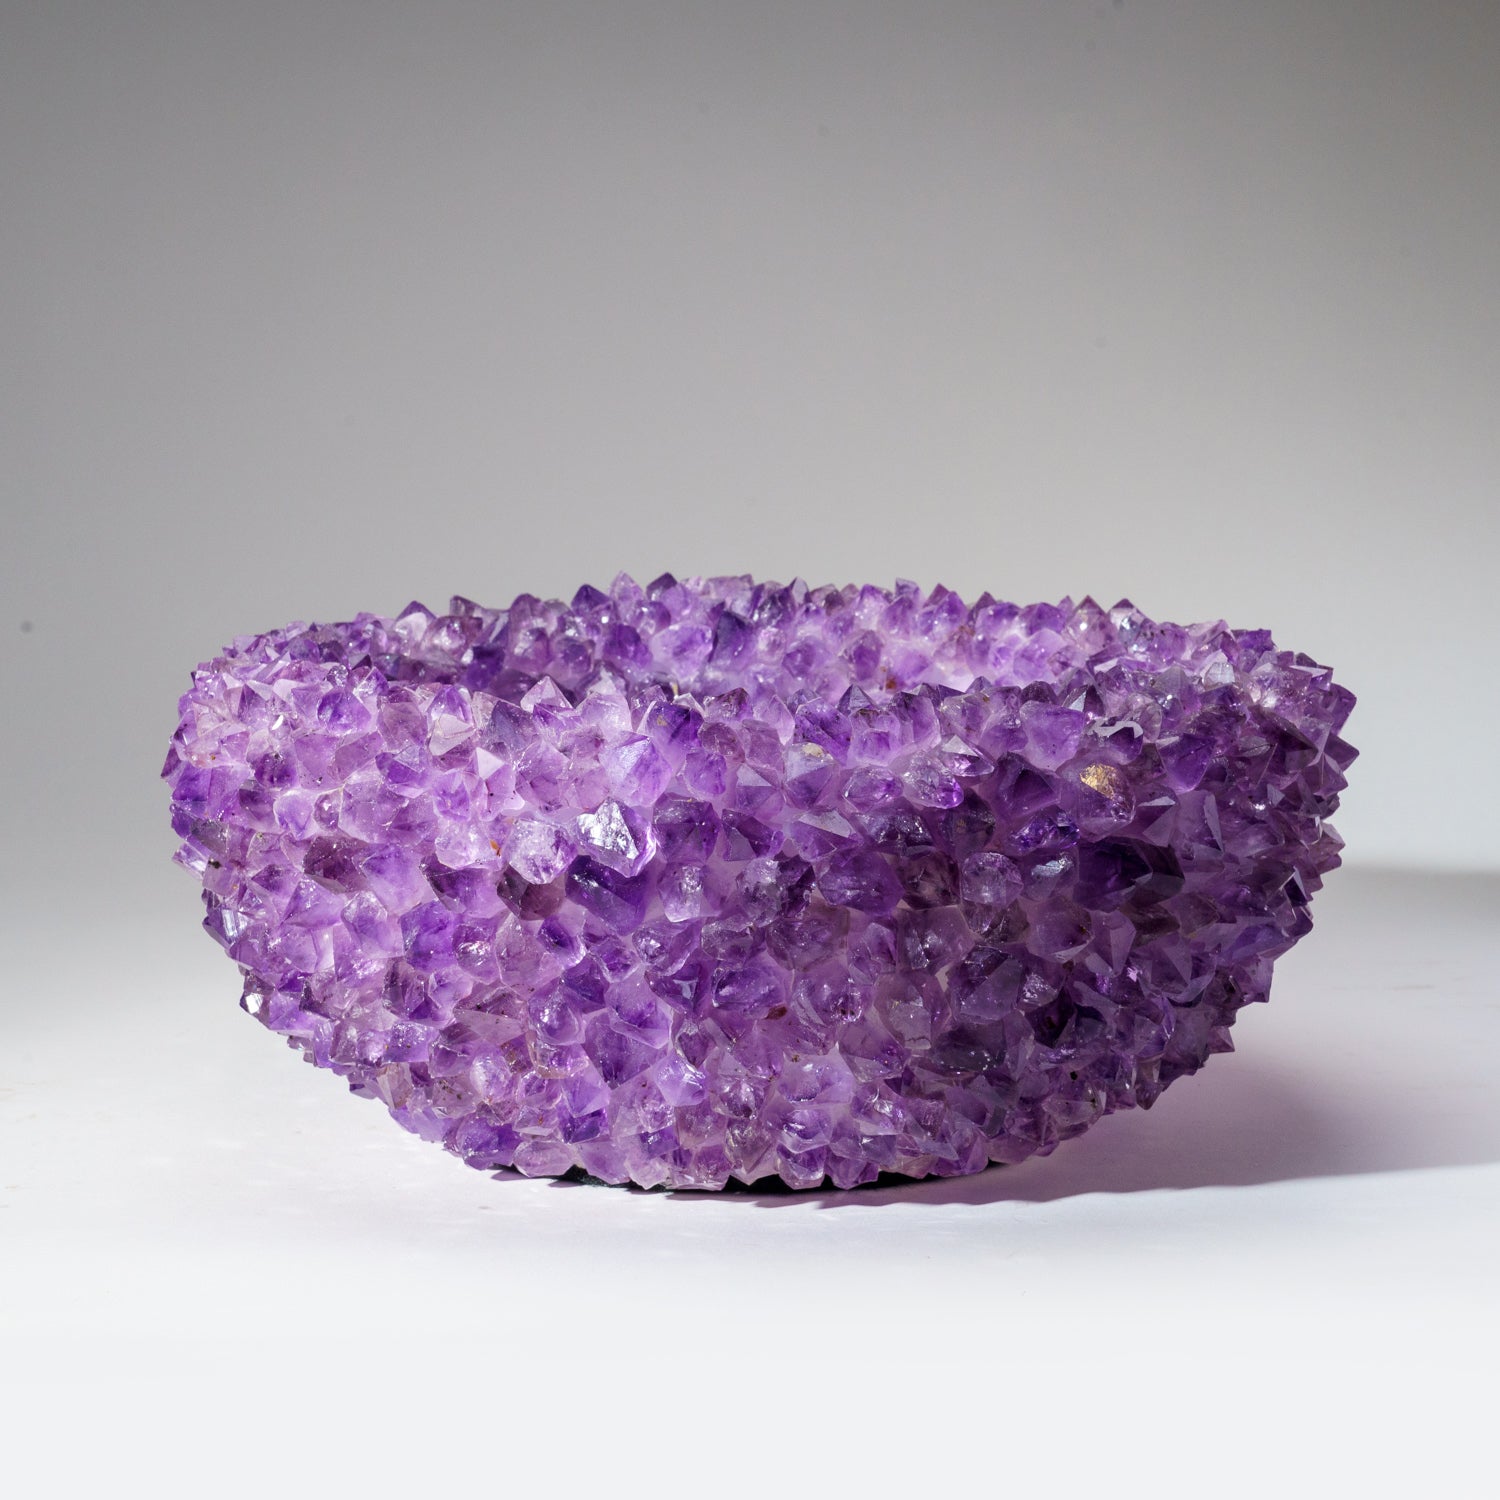 Genuine Amethyst Crystal Cluster Large Bowl (18 lbs)